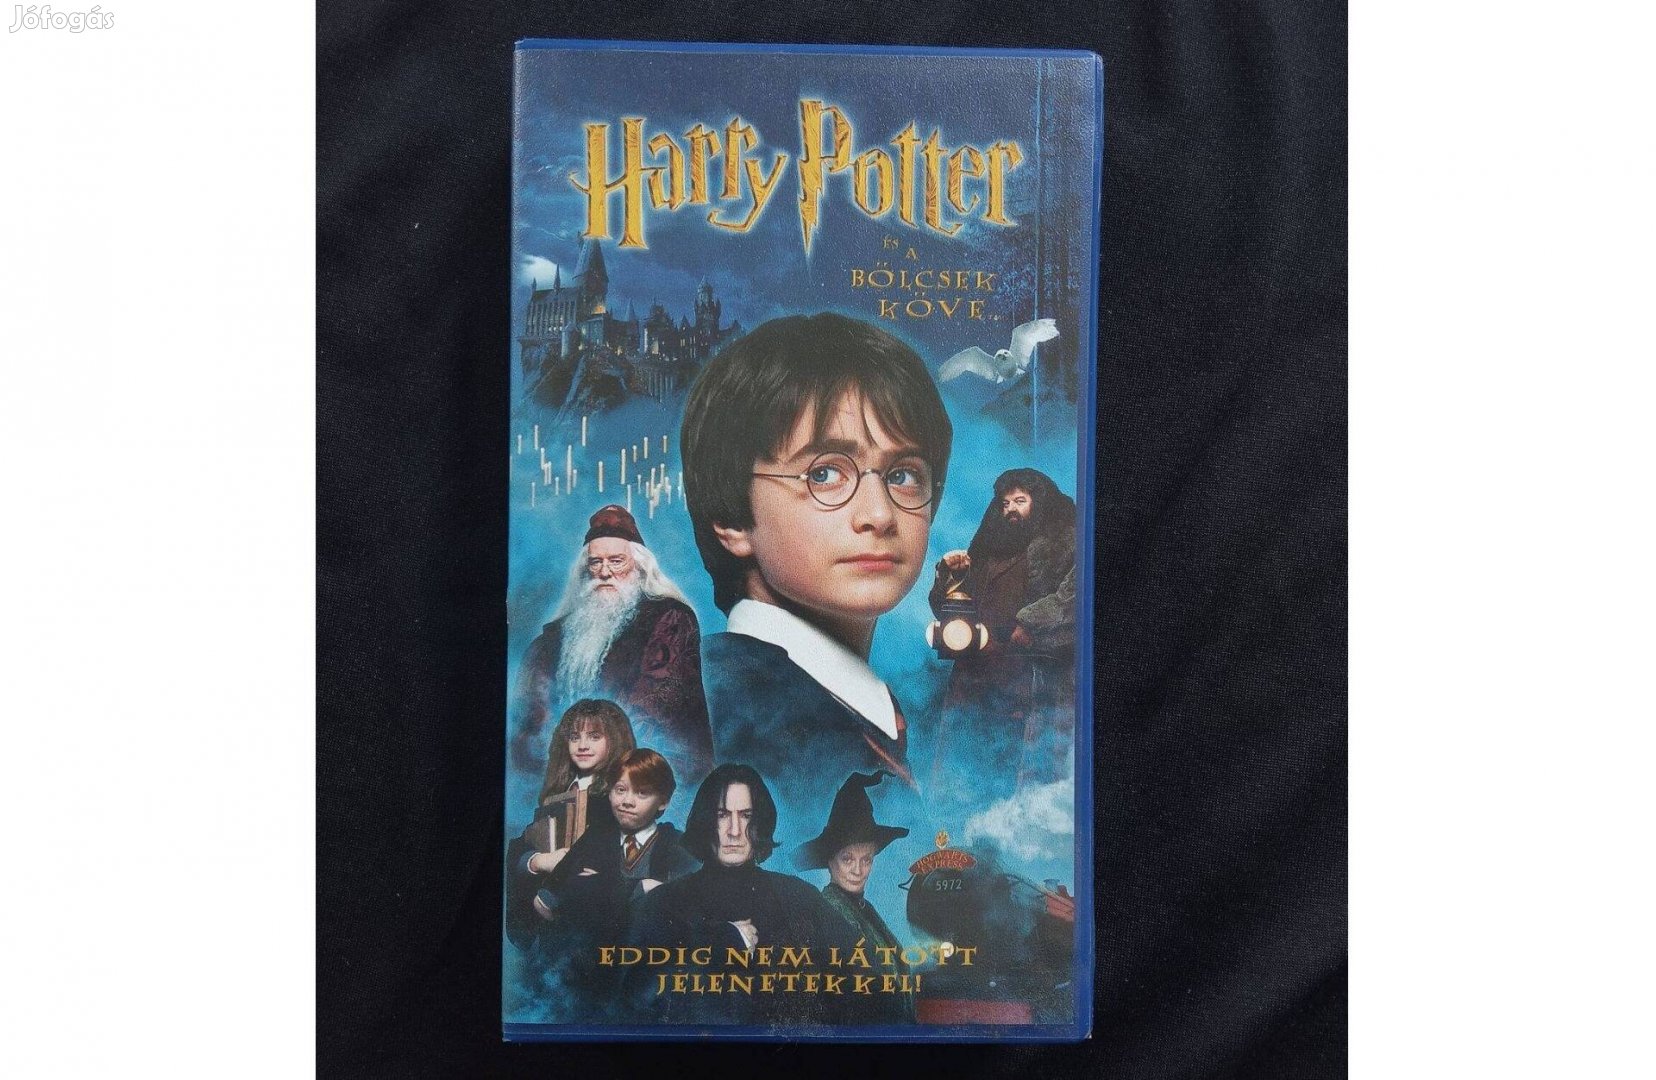 Harry Potter és a bölcsek köve vhs videó kazetta